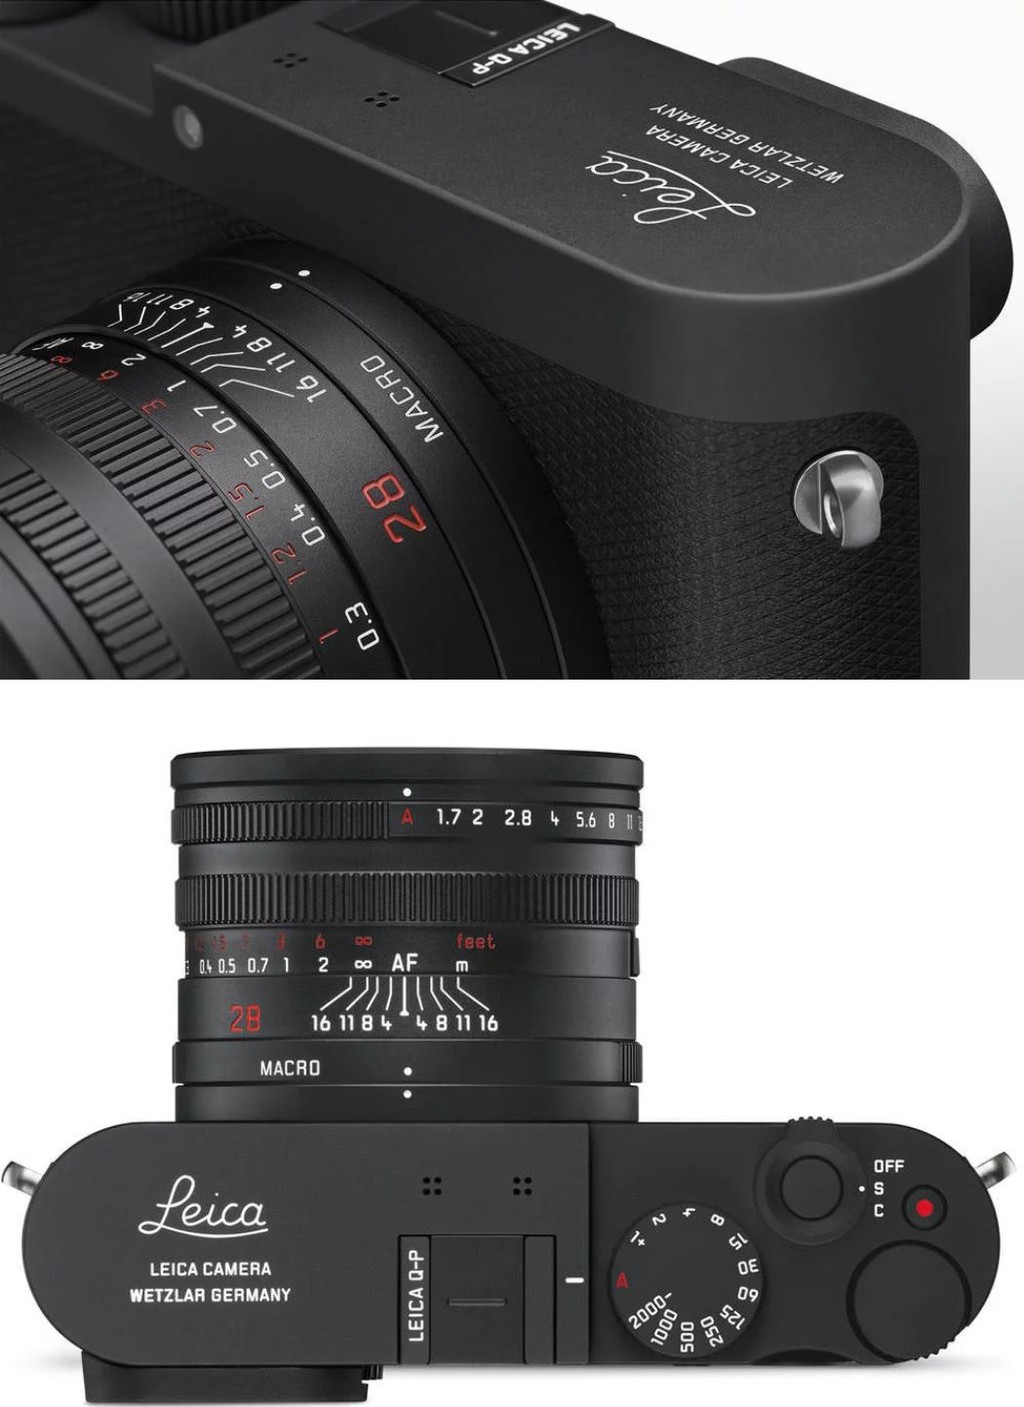 Leica ra mắt máy ảnh Q-P: Độ phân giải 24MP, ống kính liền 28mm f/1.7 ảnh 2